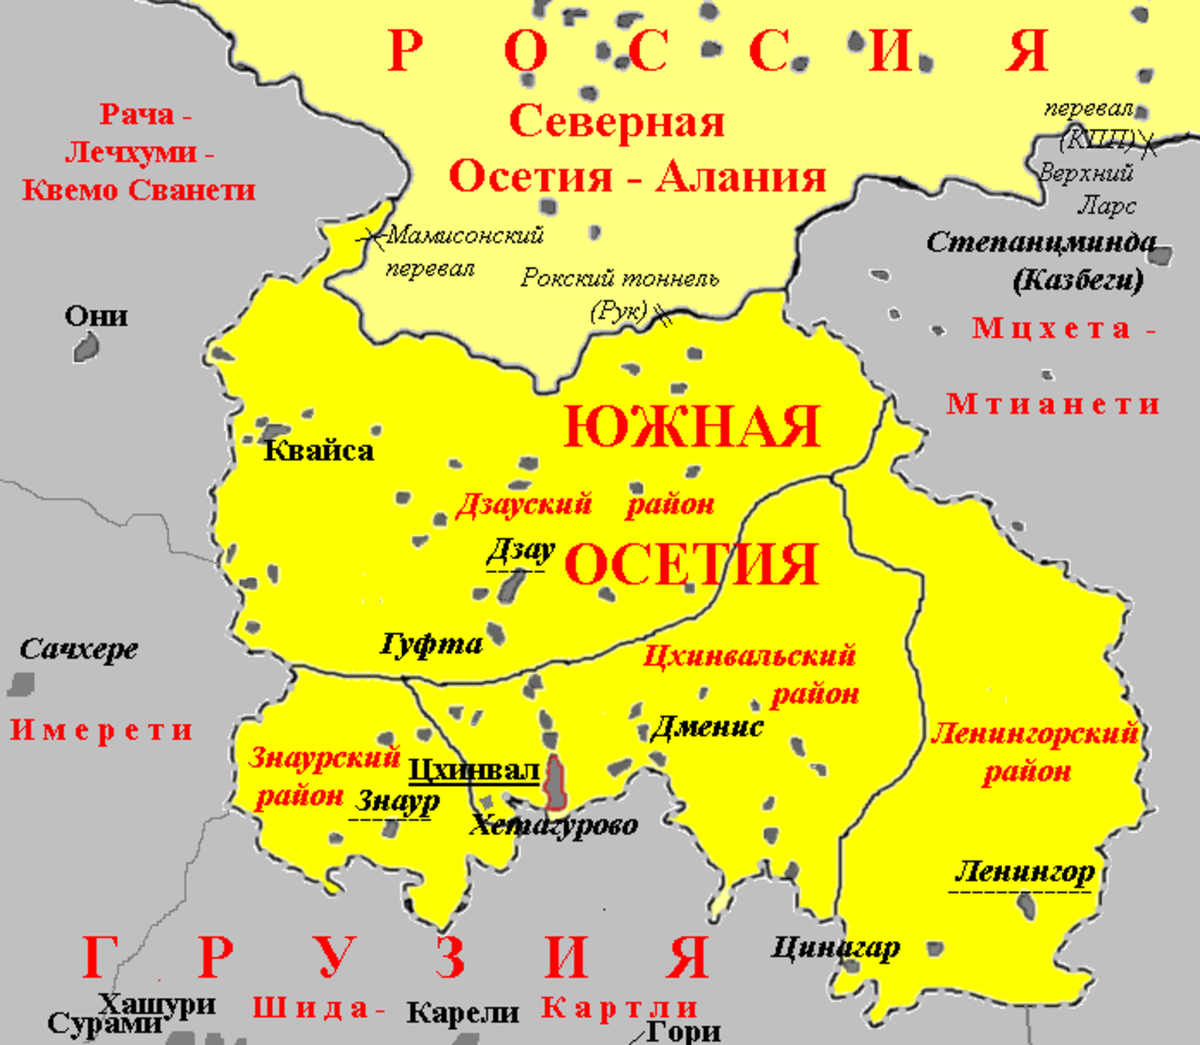 Карта Южная Осетия граница с Россией. Знаурский район Южная Осетия на карте. Границы Южной и Северной Осетии на карте. Южная Осетия на карте граница. Осетия столица на карте